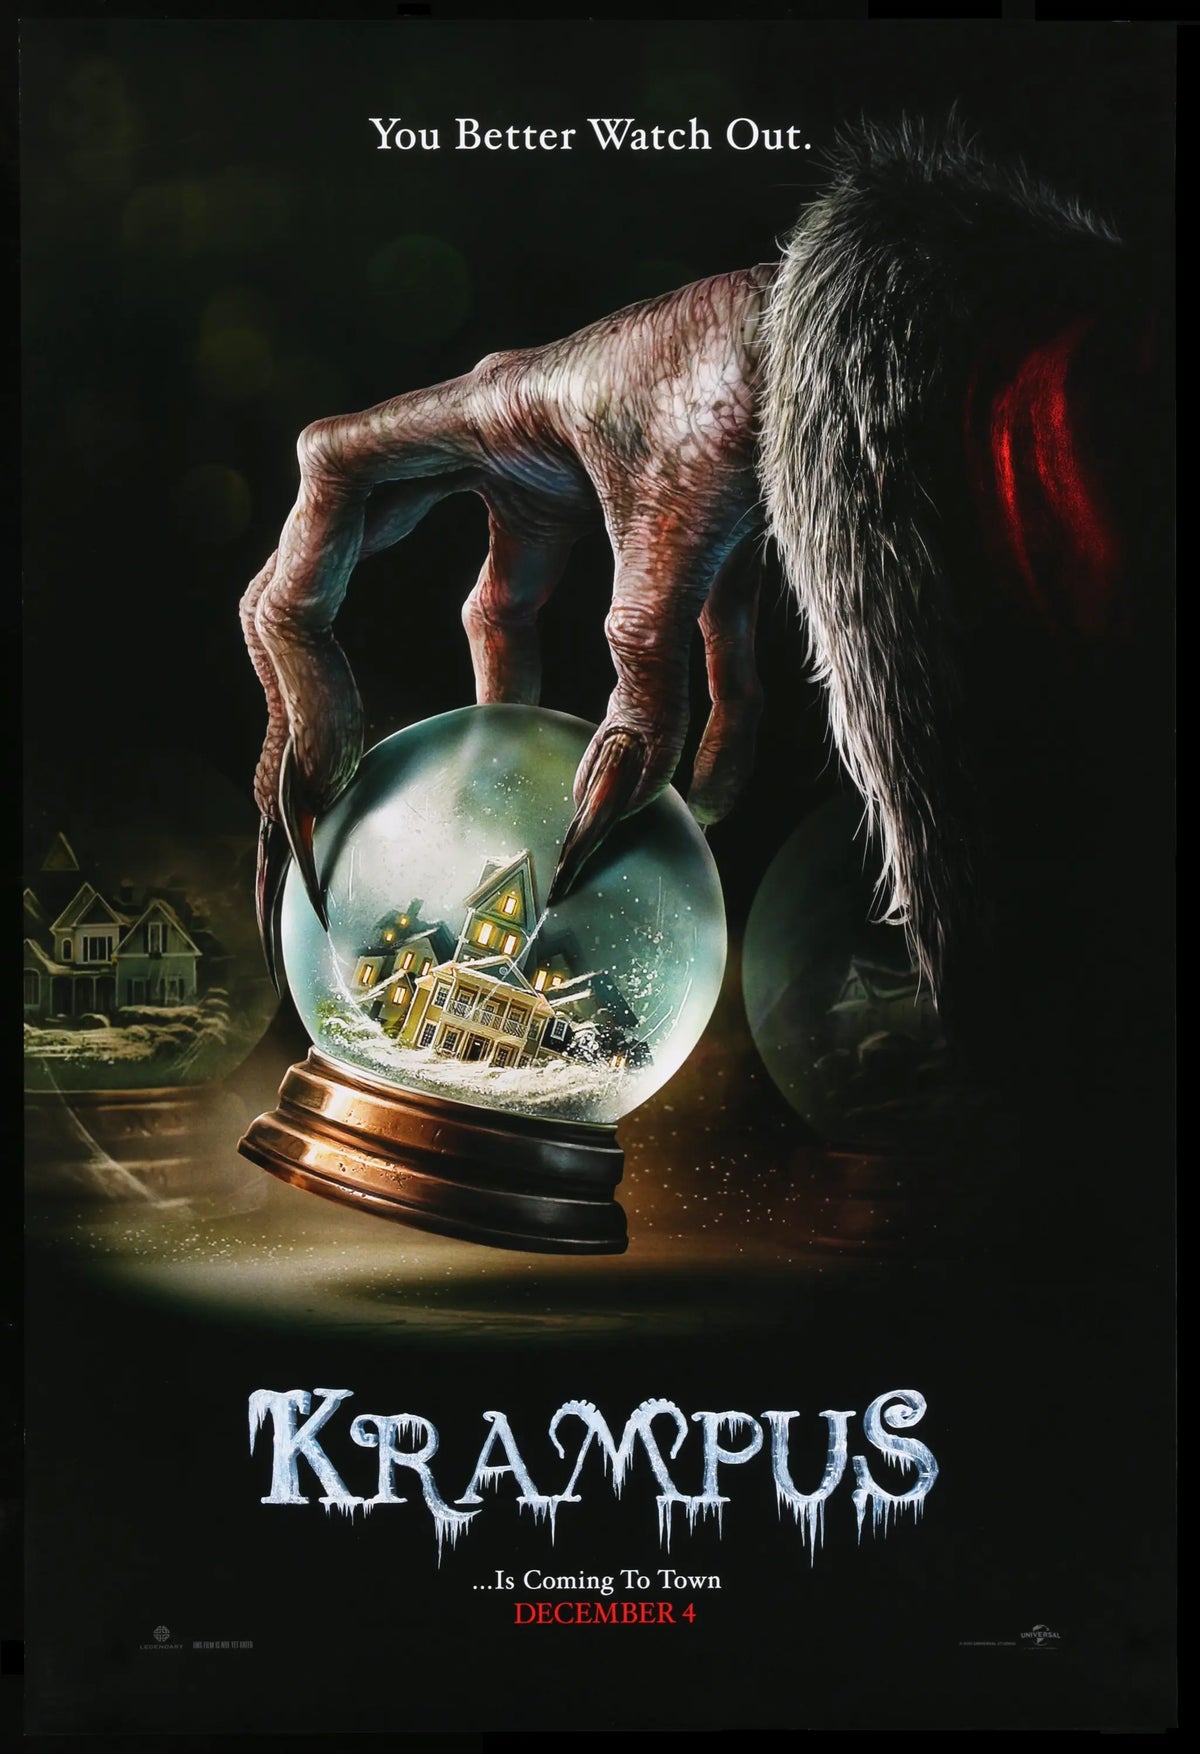 Krampus (2015) original movie poster for sale at Original Film Art